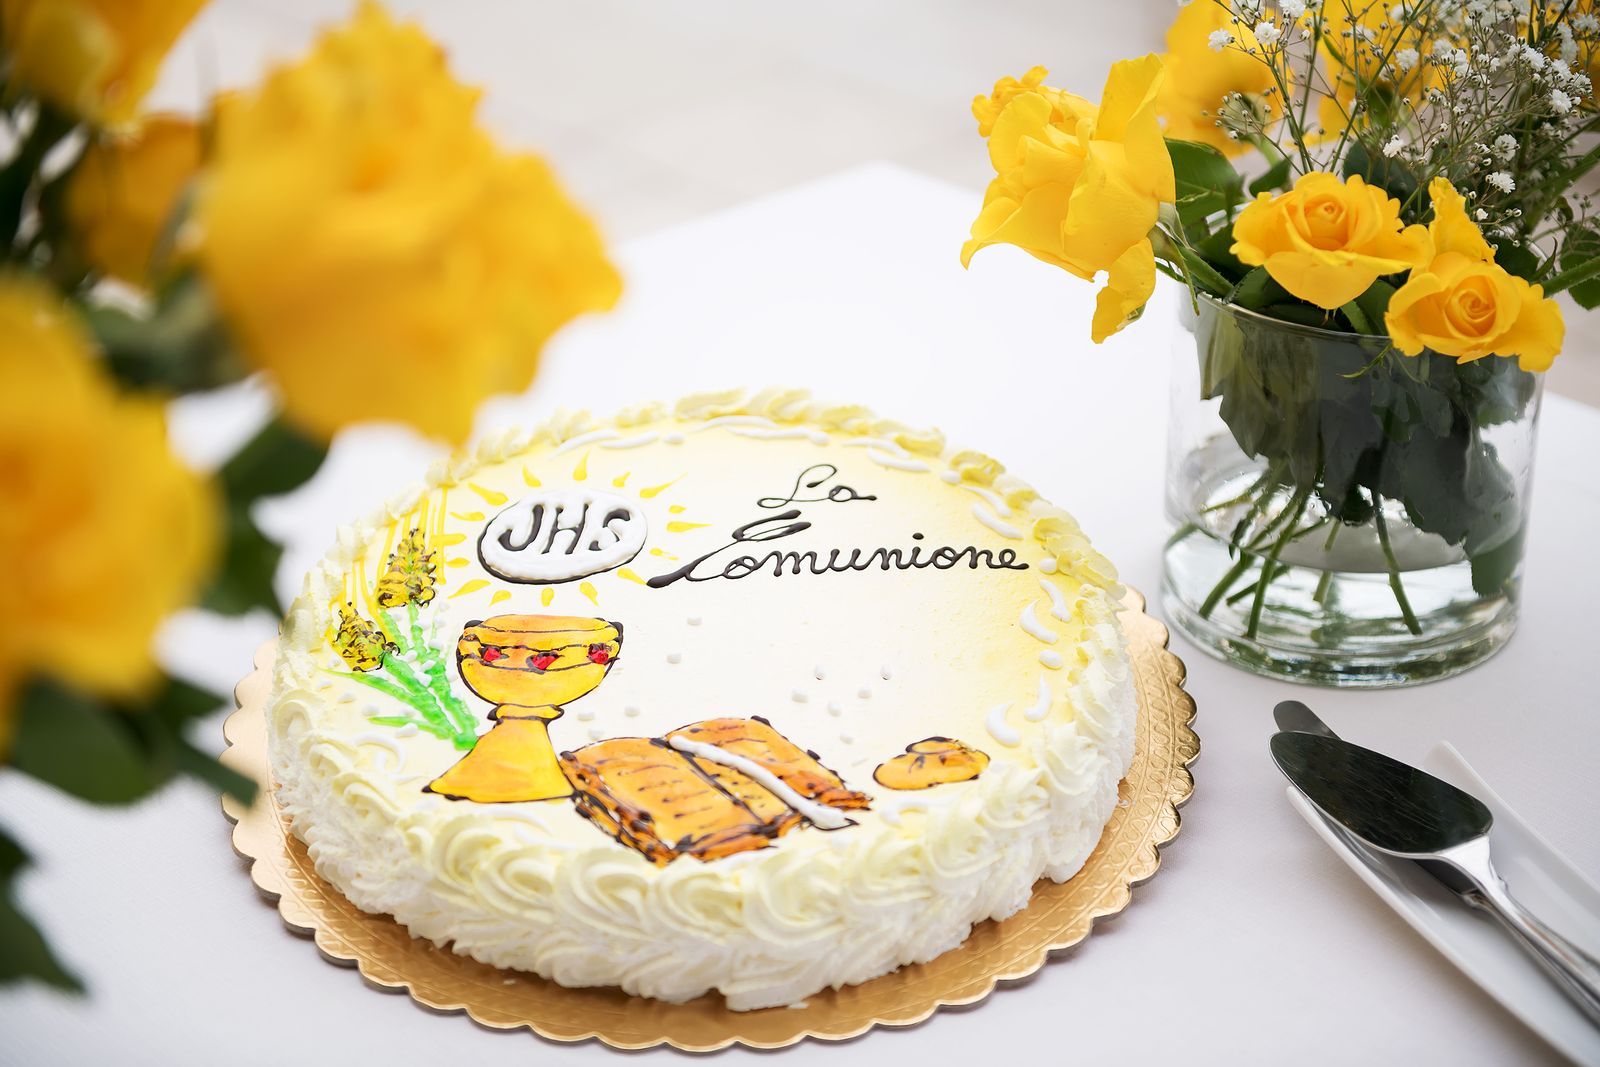 Holy communion cakes - cake